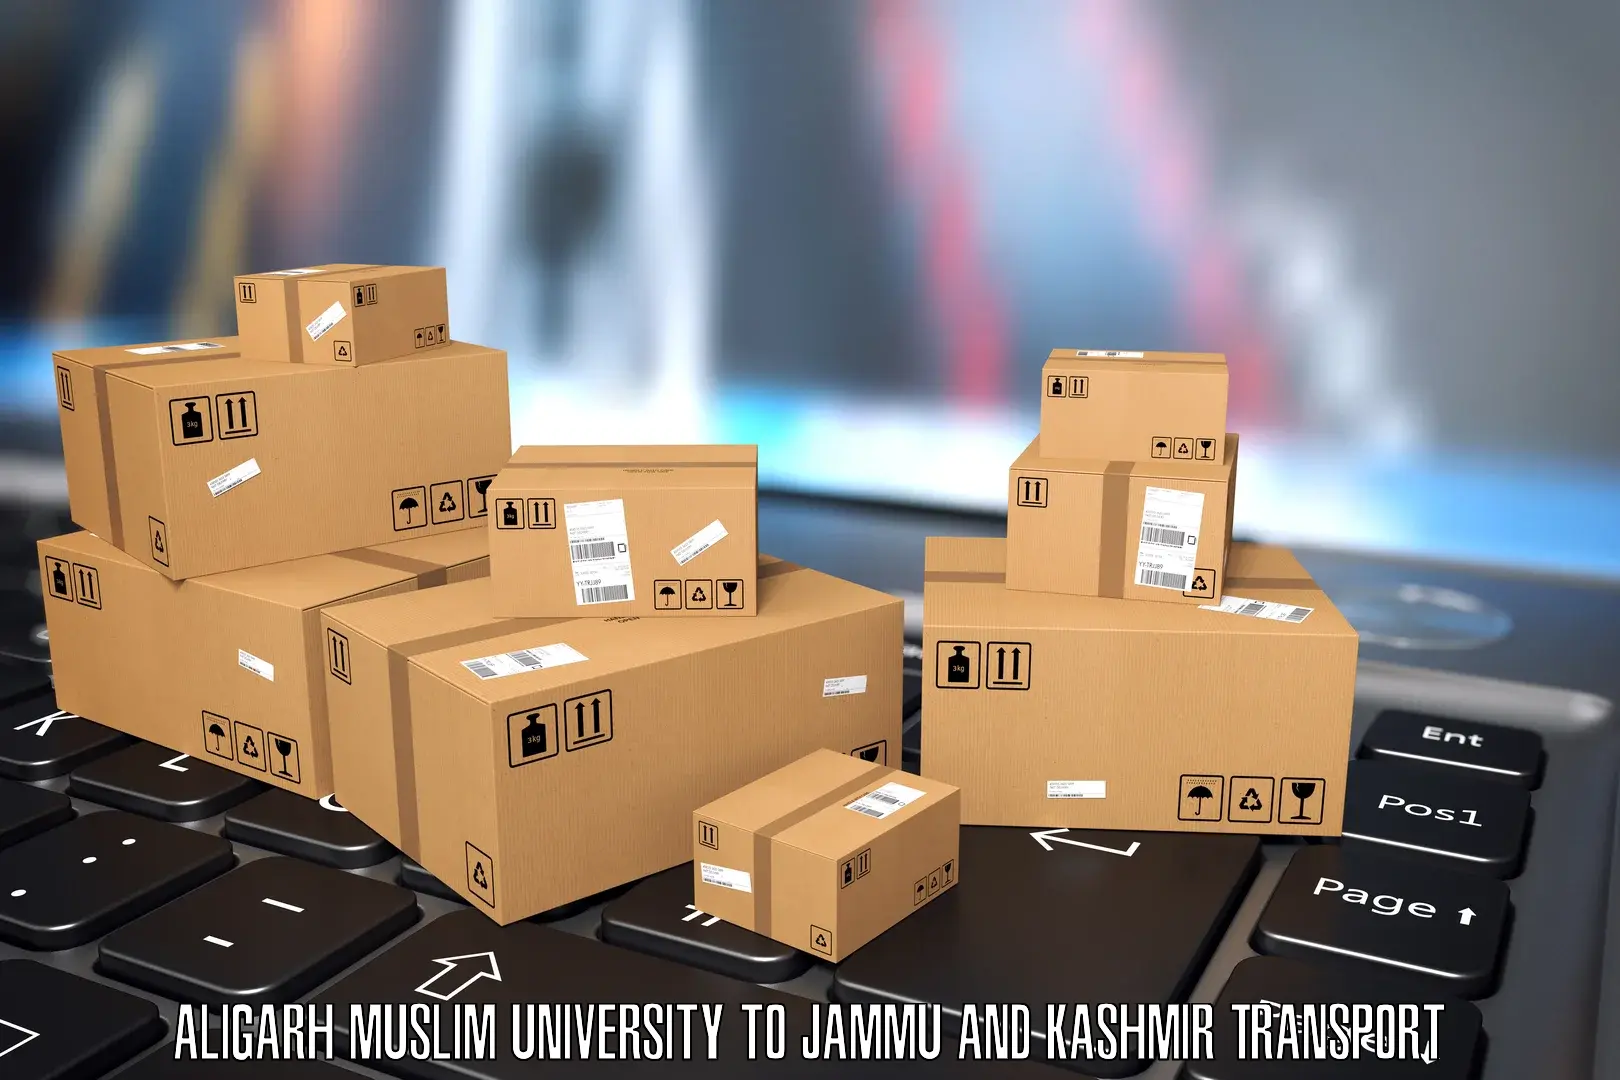 Transport in sharing in Aligarh Muslim University to University of Kashmir Srinagar